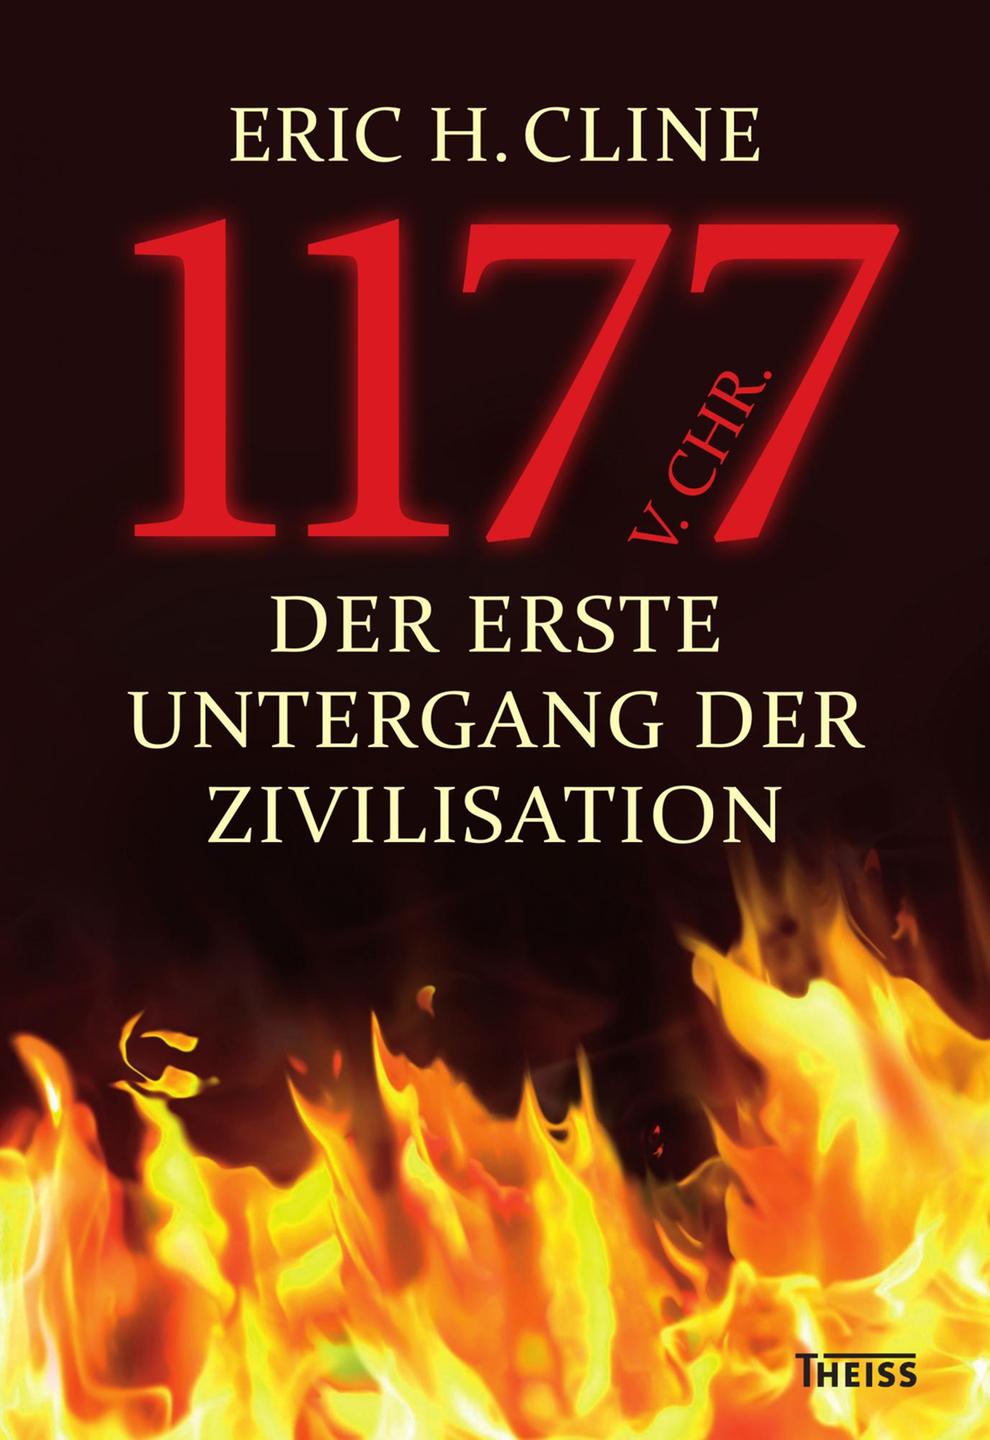 Cover von Eric H. Clines "1177 v. Chr. Der erste Untergang der Zivilisation"